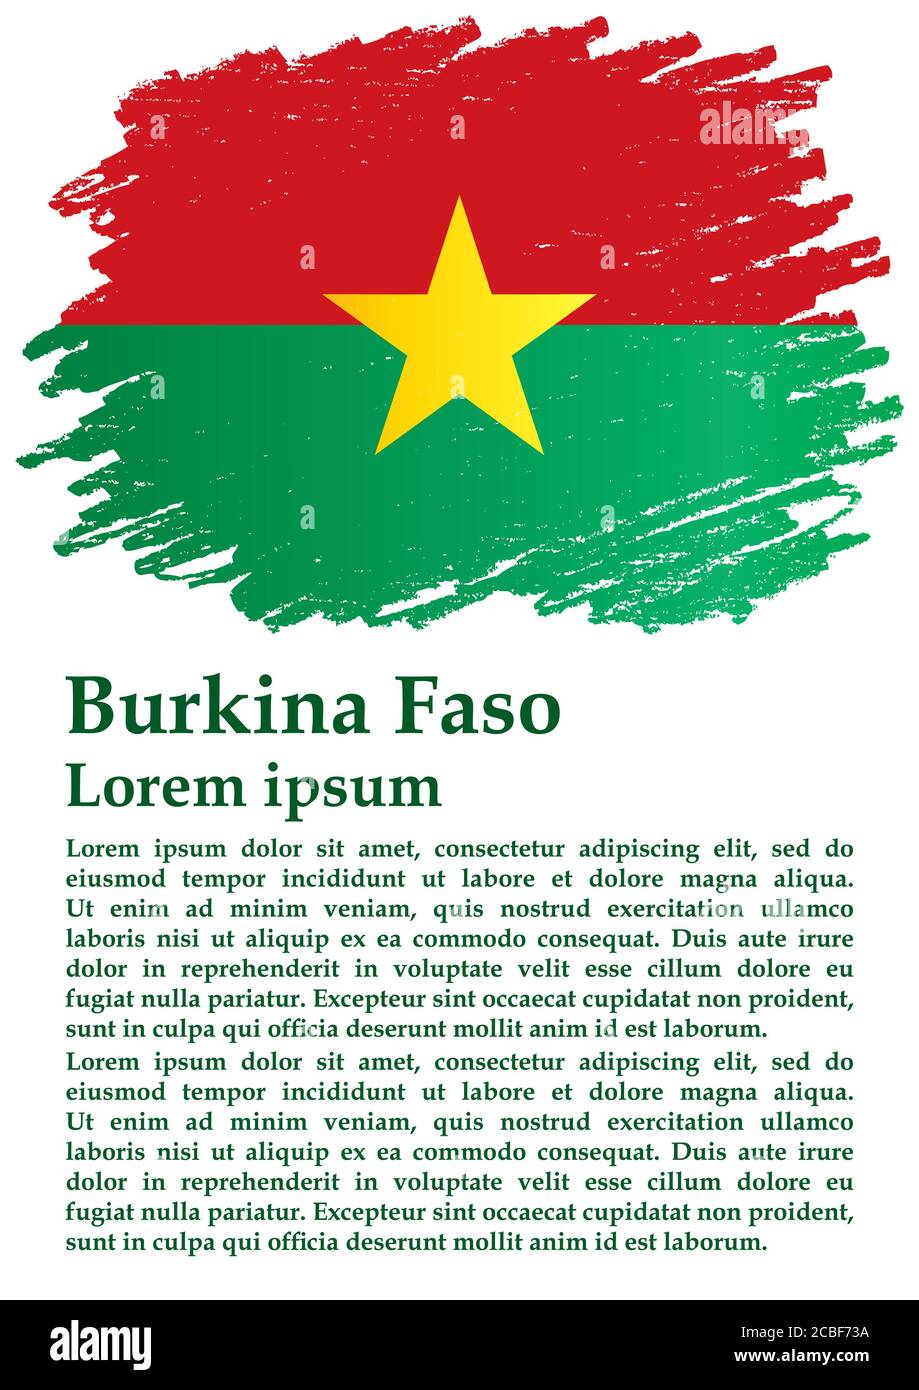 Drapeau du Burkina Faso, pays du Burkina Faso en Afrique de l'Ouest. Modèle pour la conception de prix, un document officiel avec le drapeau du Burkina Faso. Illustration de Vecteur